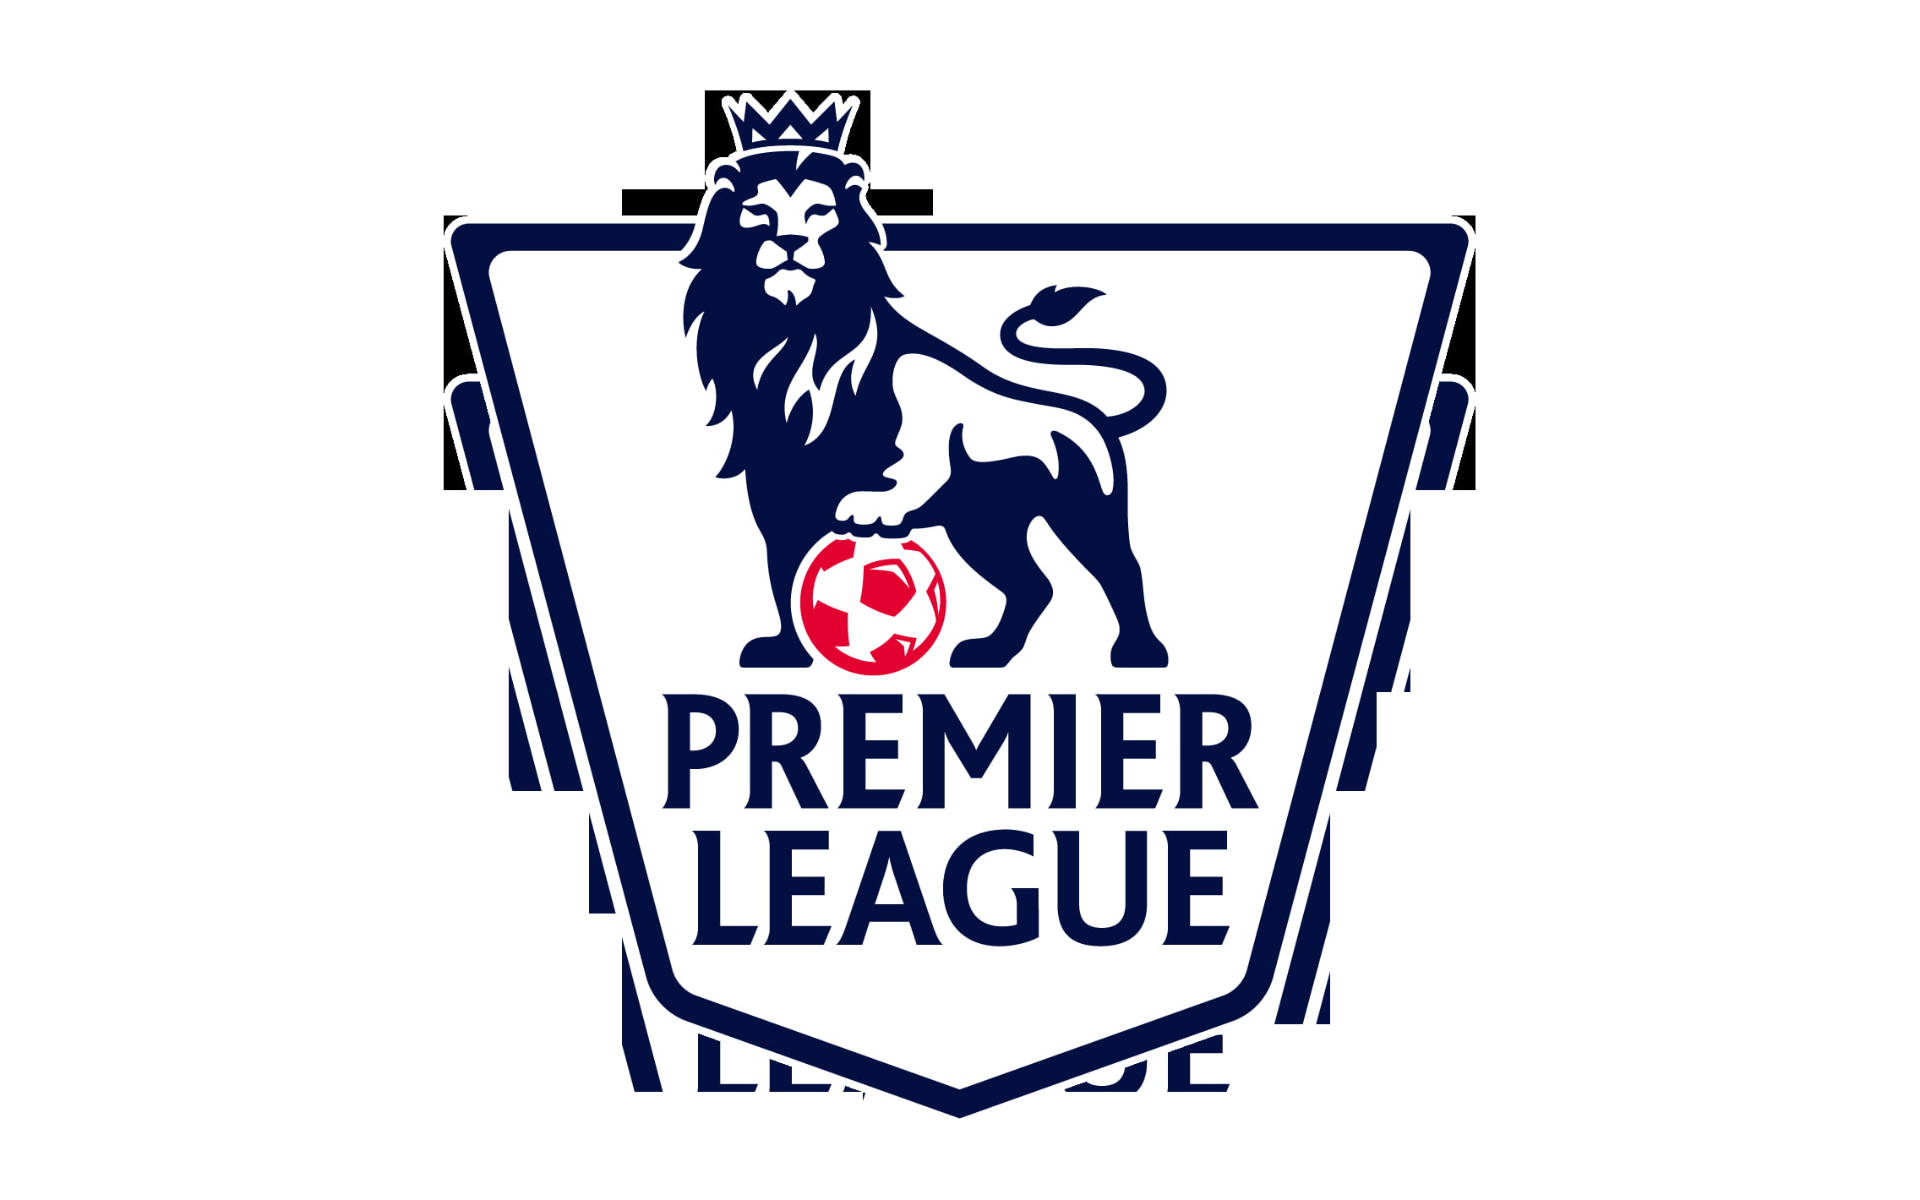 Premier League Emblem In White